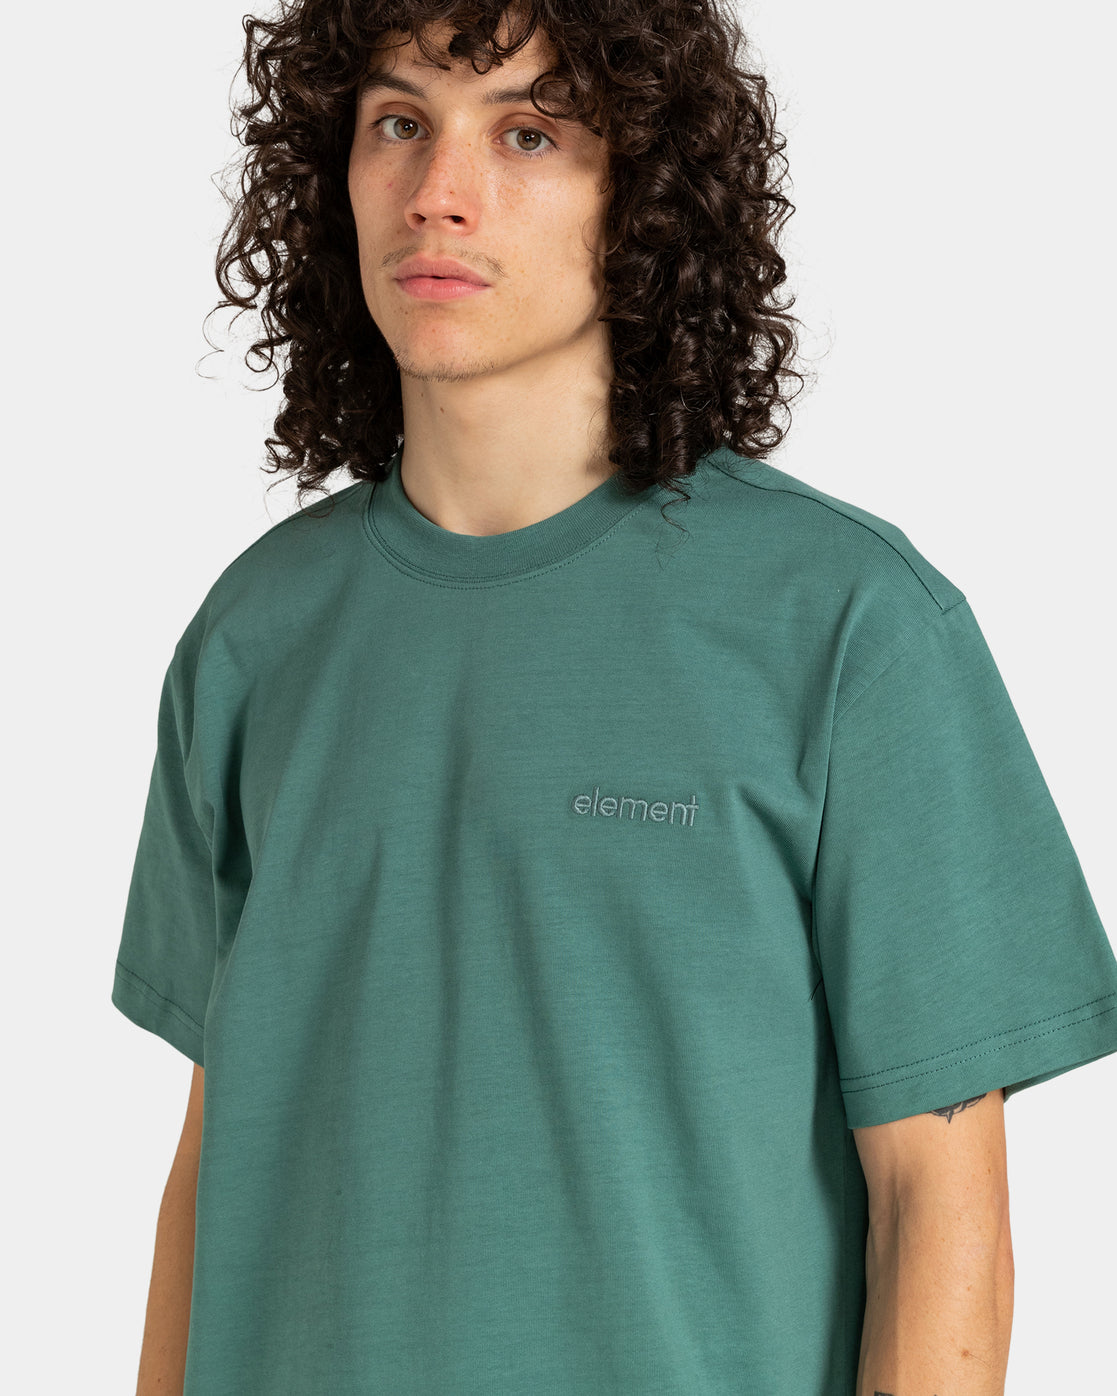 Camiseta Element Skateboards Crail 3.0 North Atlantic | Camisetas de hombre | Camisetas manga corta de hombre | Element | LO MÁS NUEVO | surfdevils.com